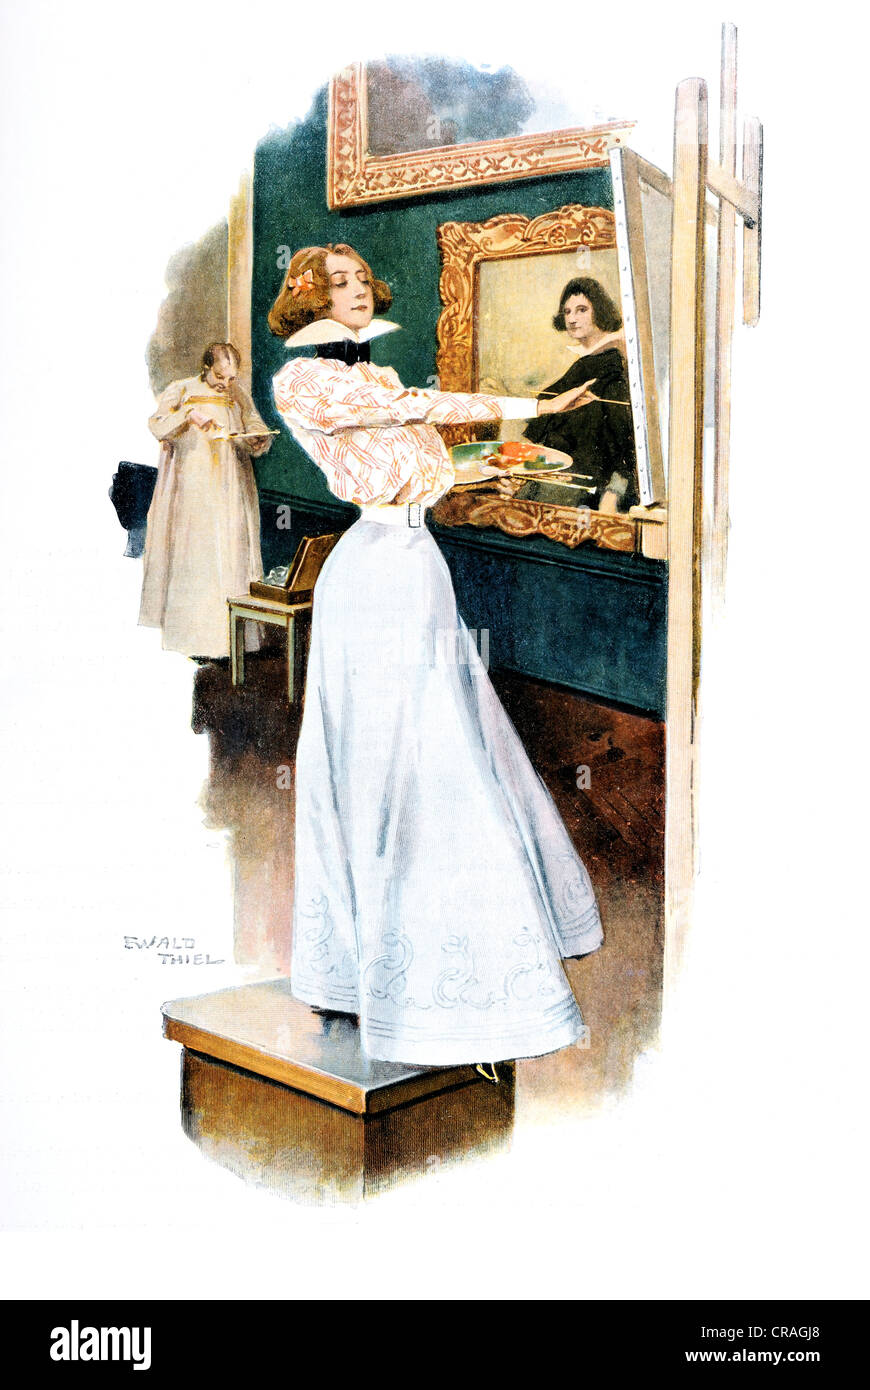 Copista nella galleria, storico figurativo di xilografia, dall'anno Prenota Arte moderna in Master xilografie, 1908 Foto Stock